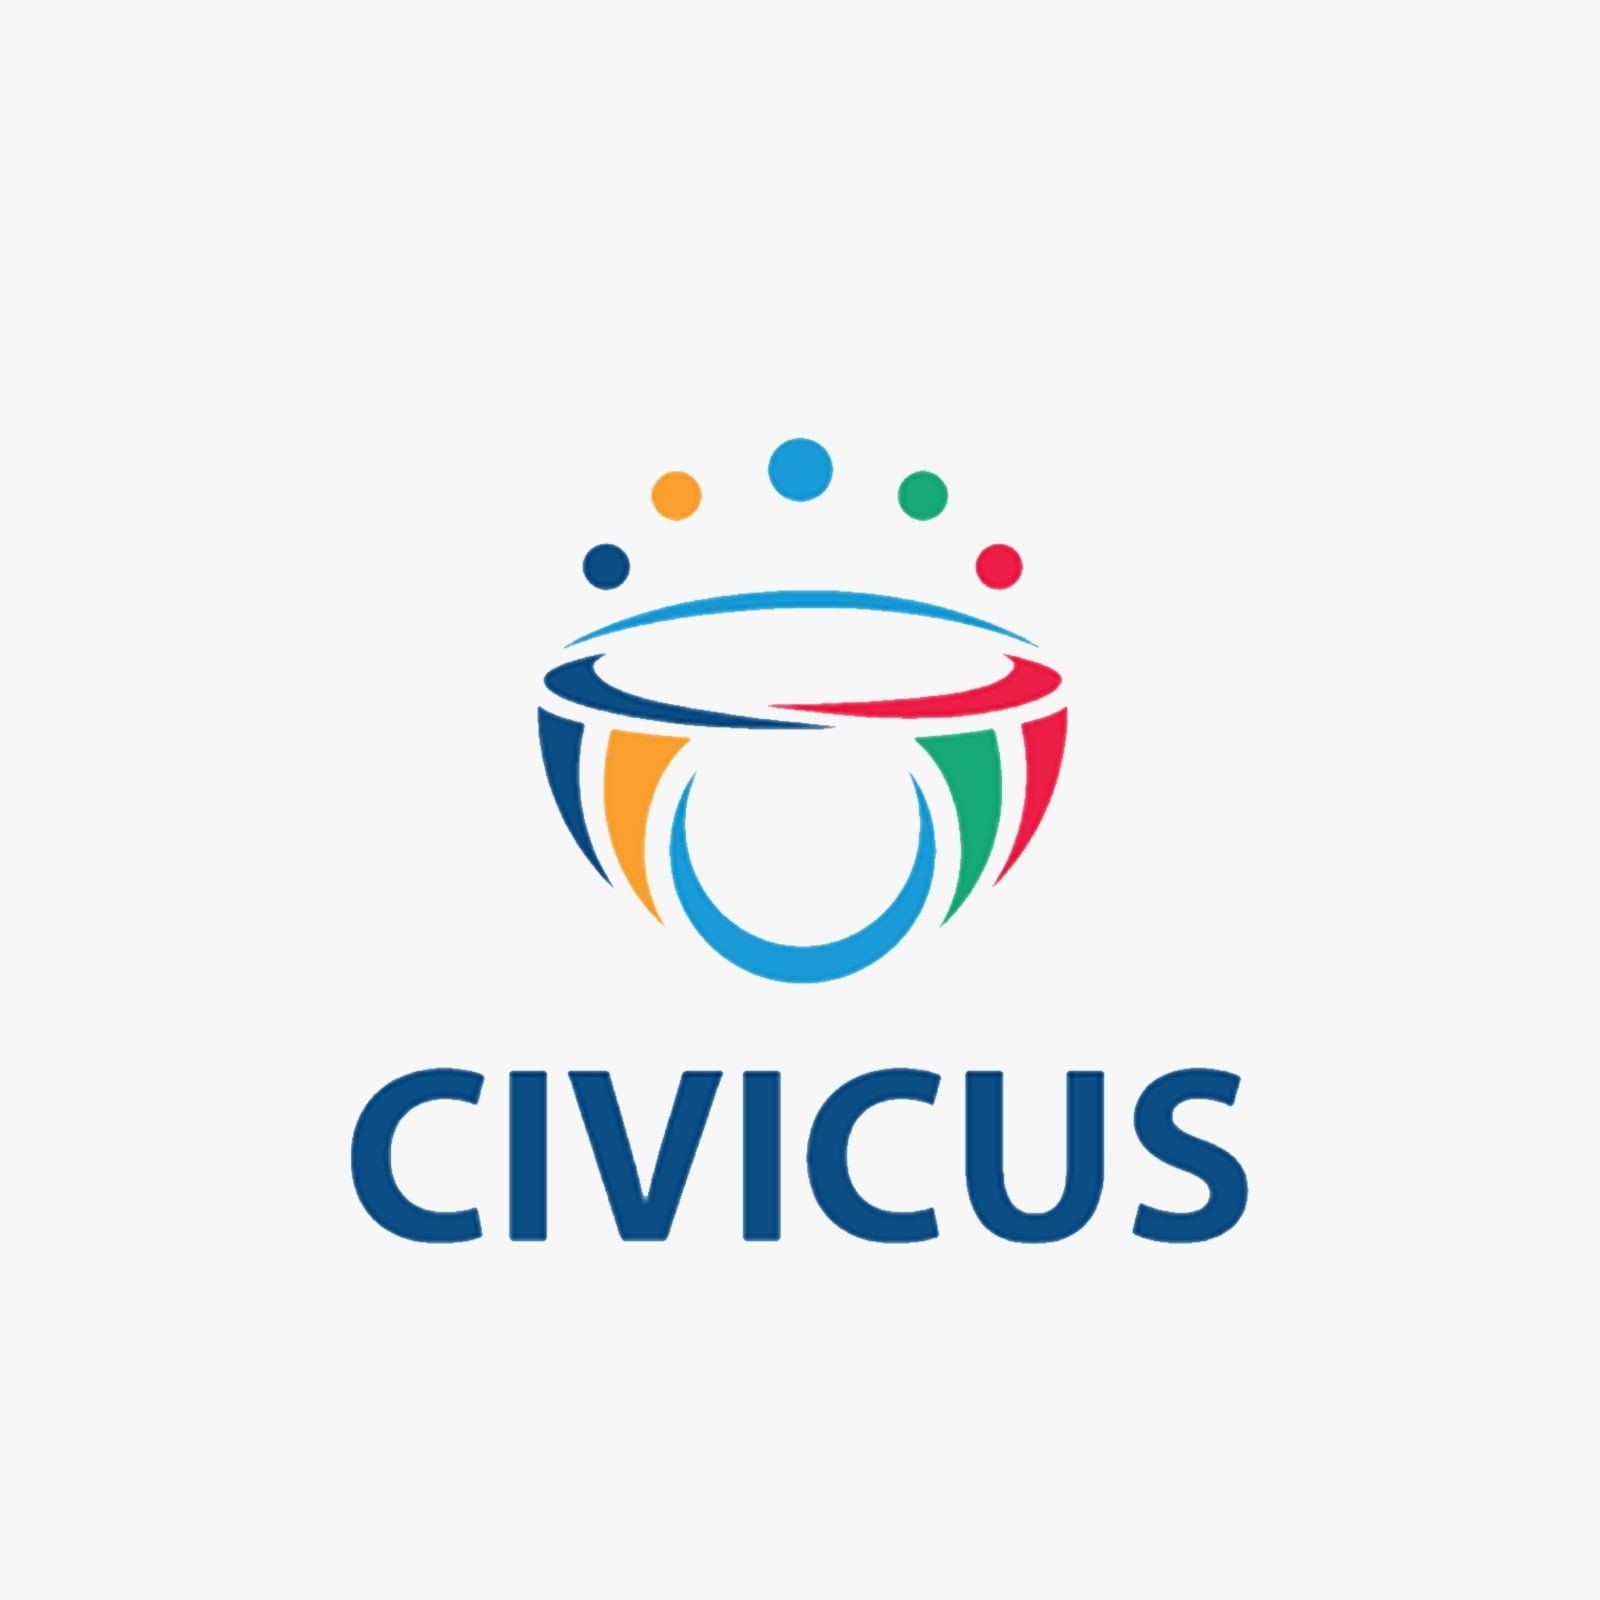 civicus